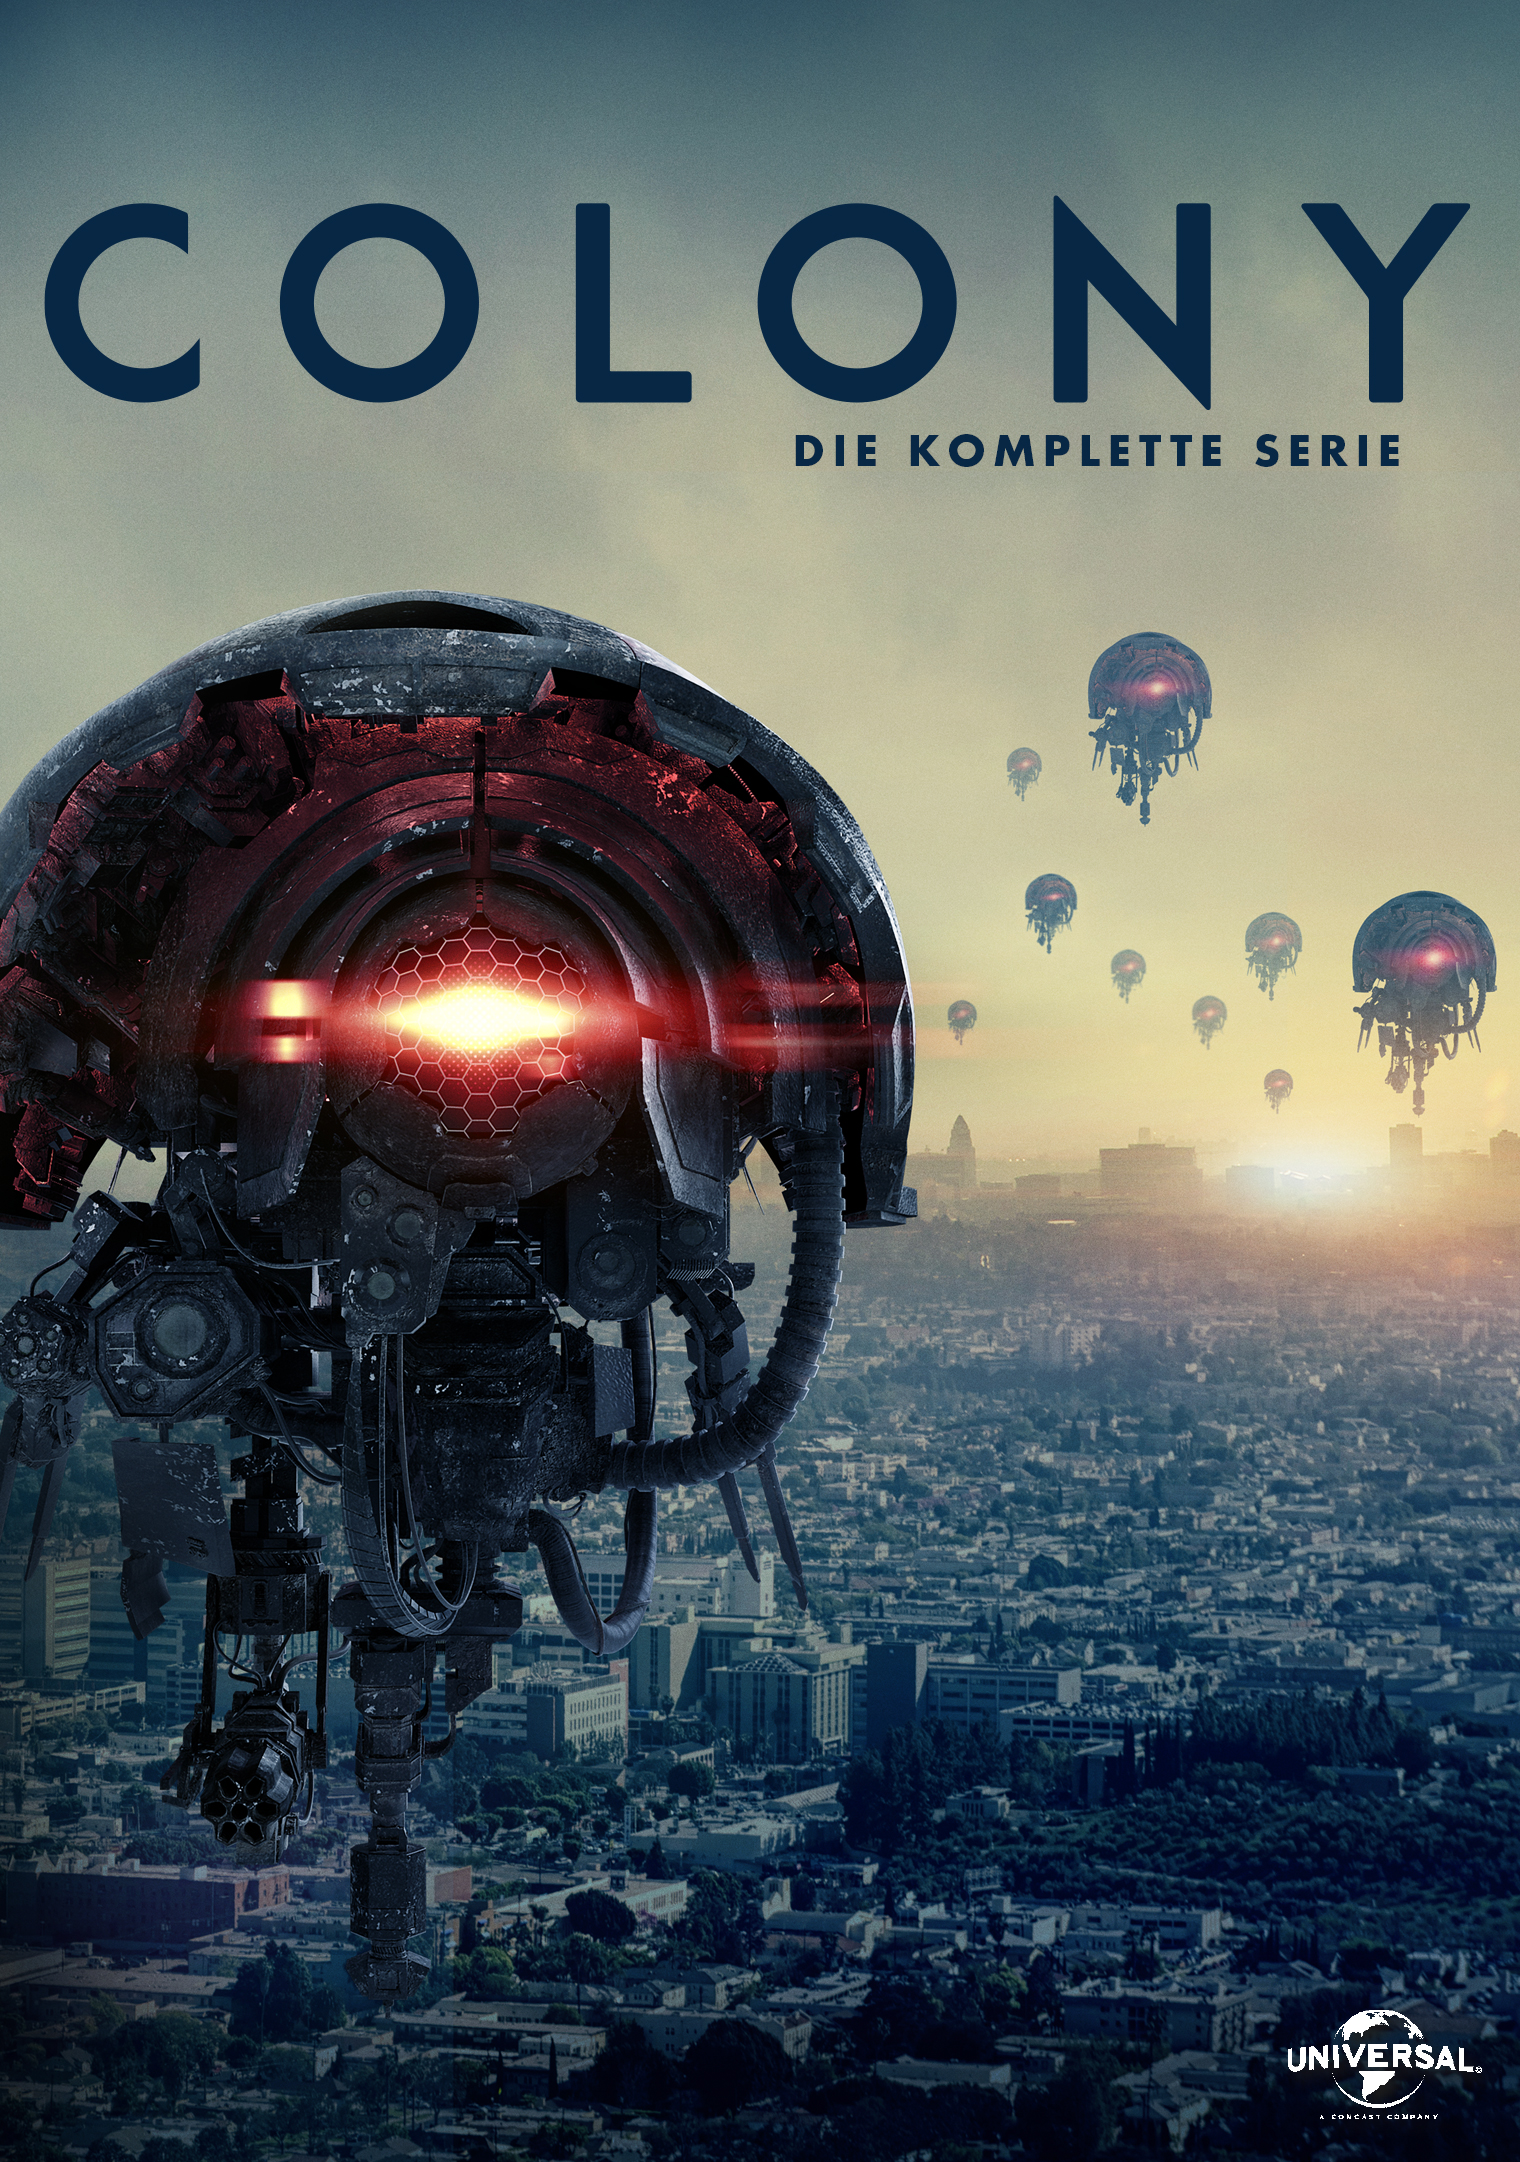 COLONY – Die komplette Serie | Ab 18.03.2022 als DVD und Blu-ray erhältlich!